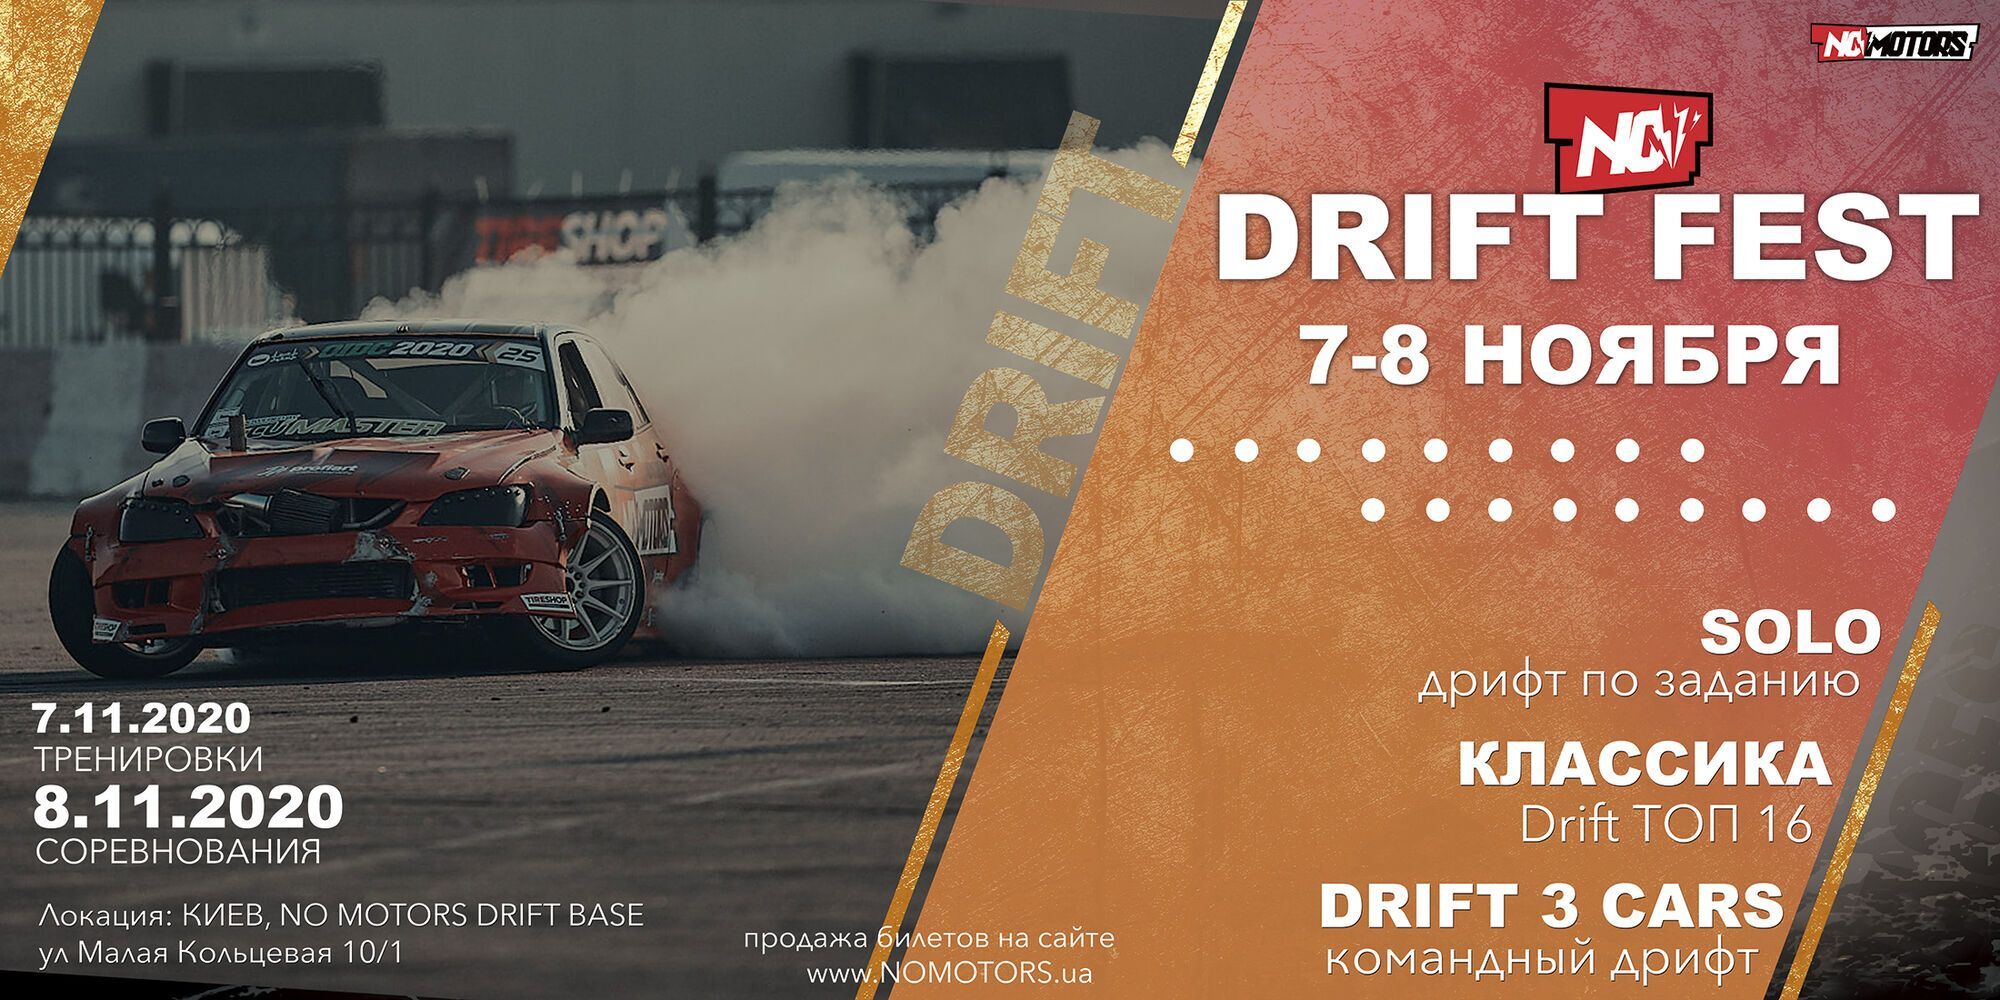 В Киеве состоится фестиваль дрифта NoMotors Drift Fest